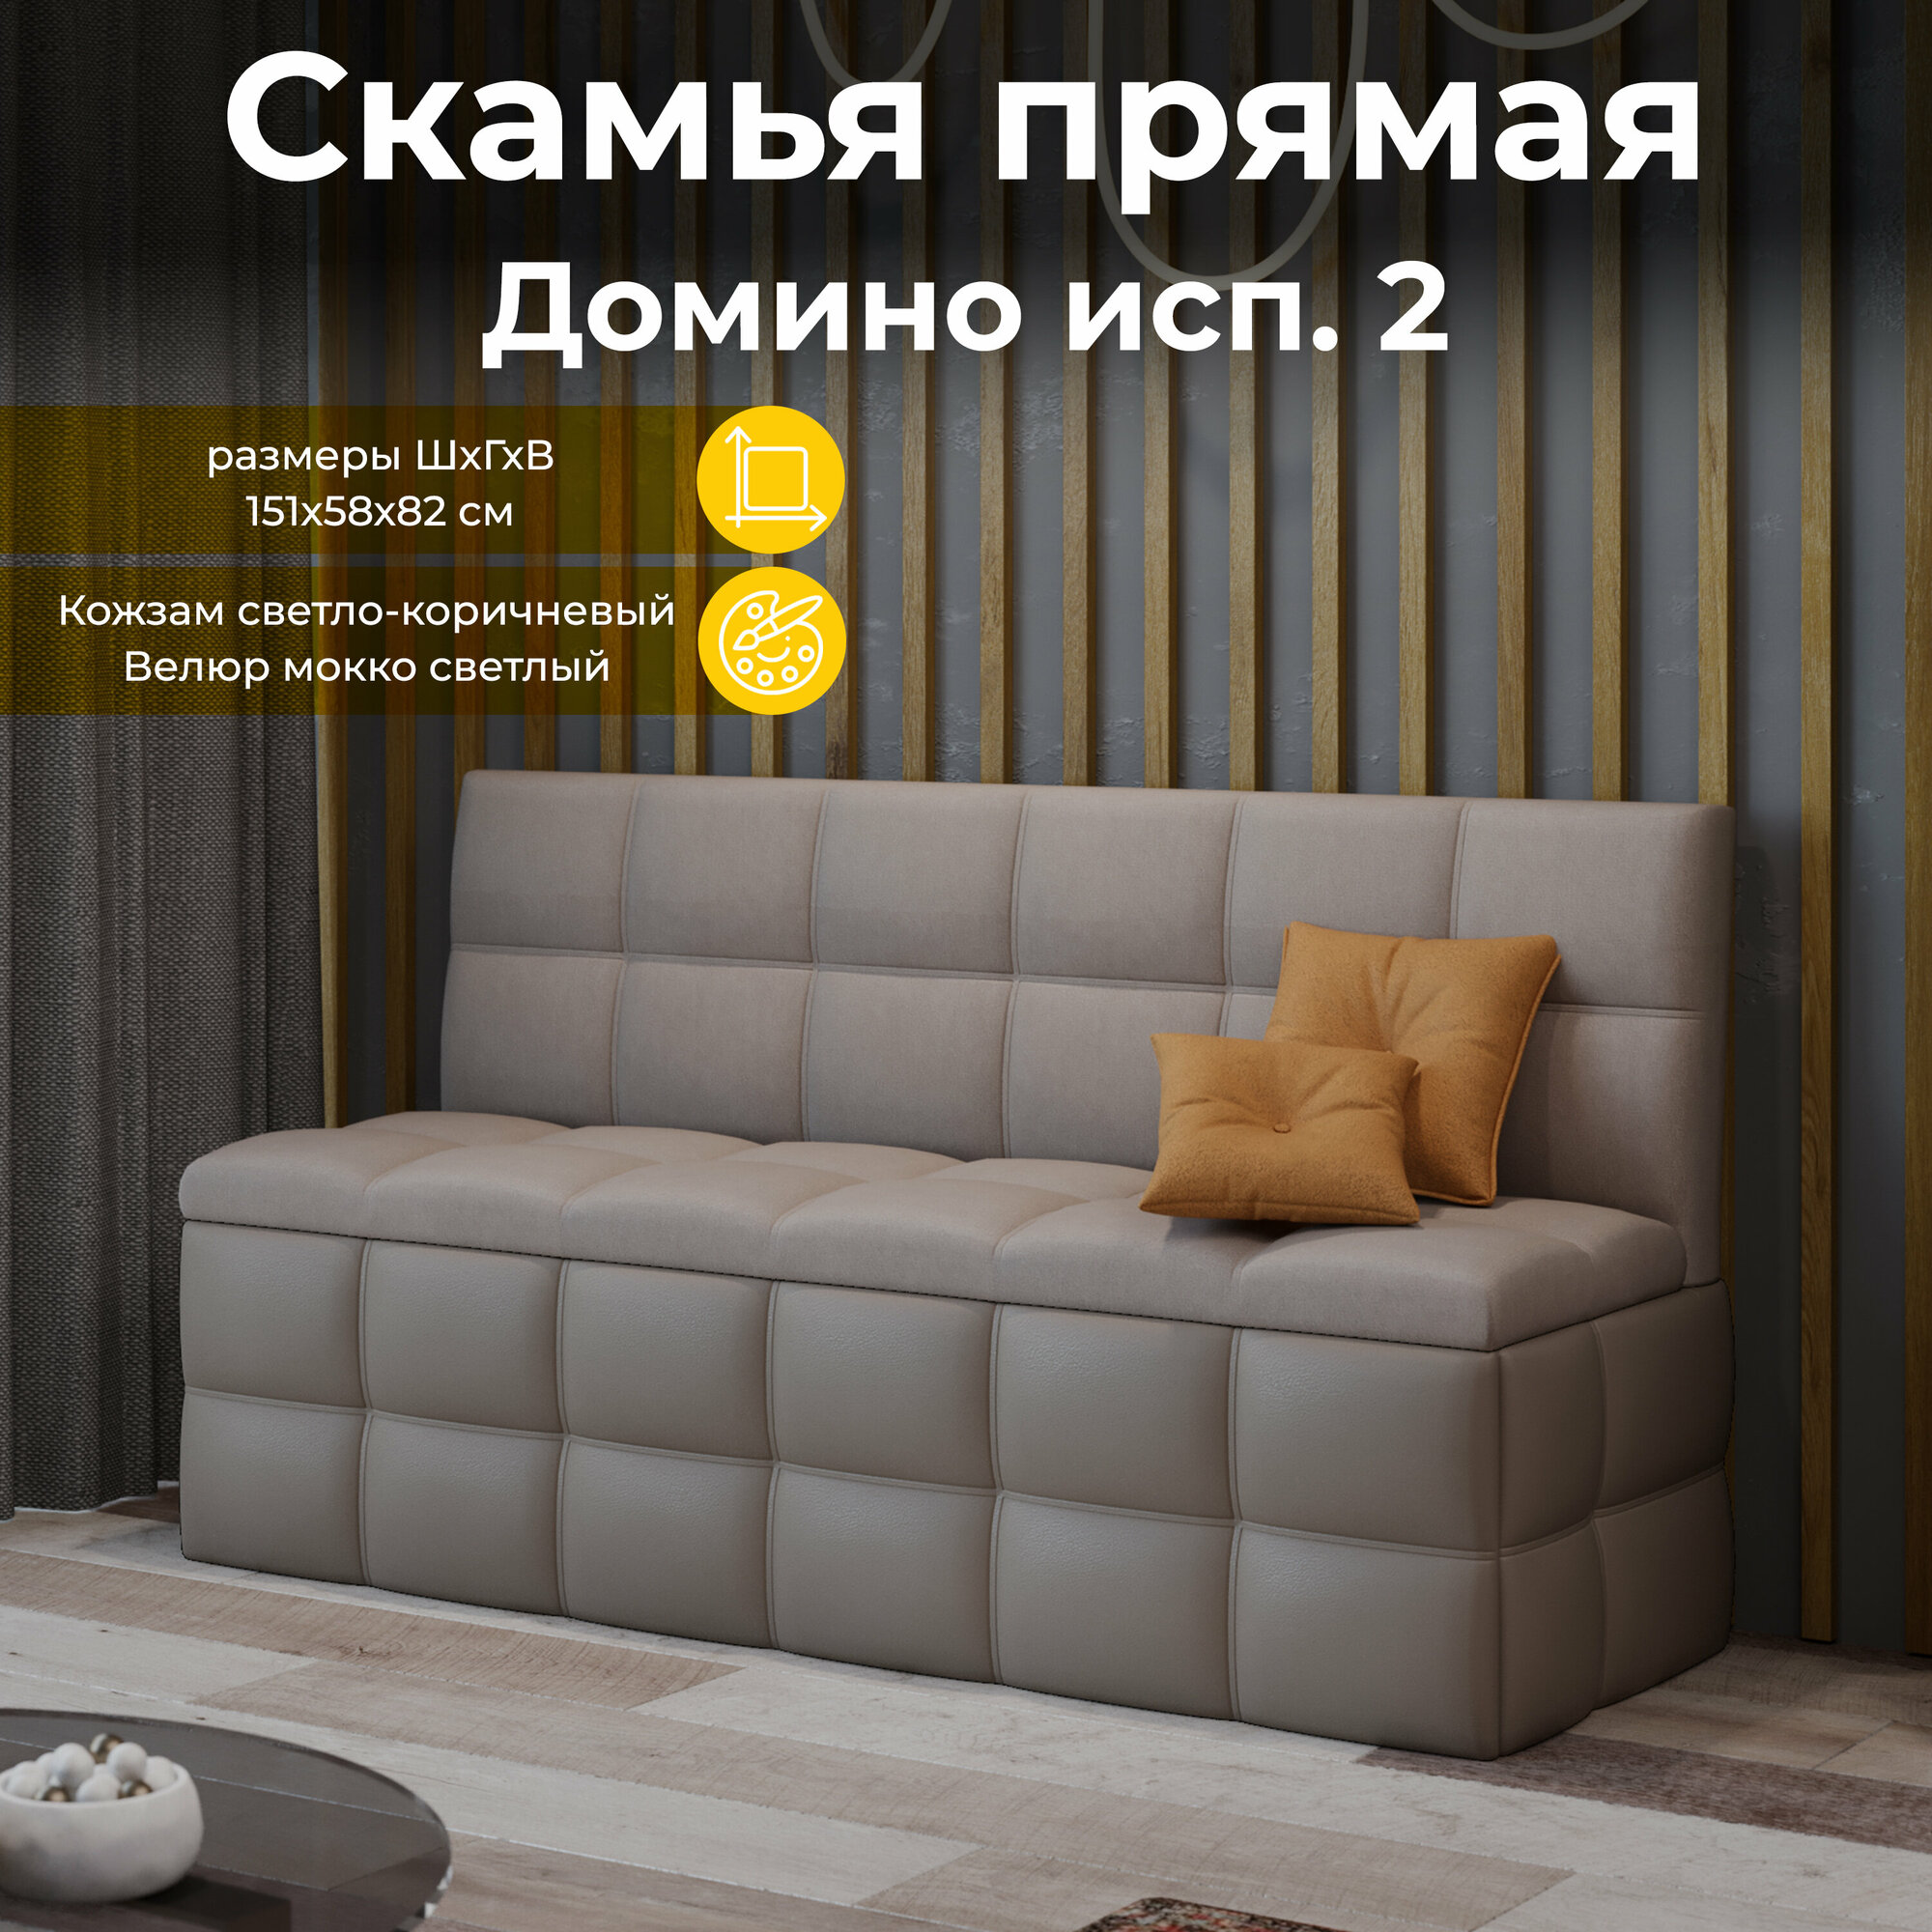 Кухонный диван, кухонная скамья прямая, светлокоричневый какао (ВхДхГ) 82х157х58 см, Домино